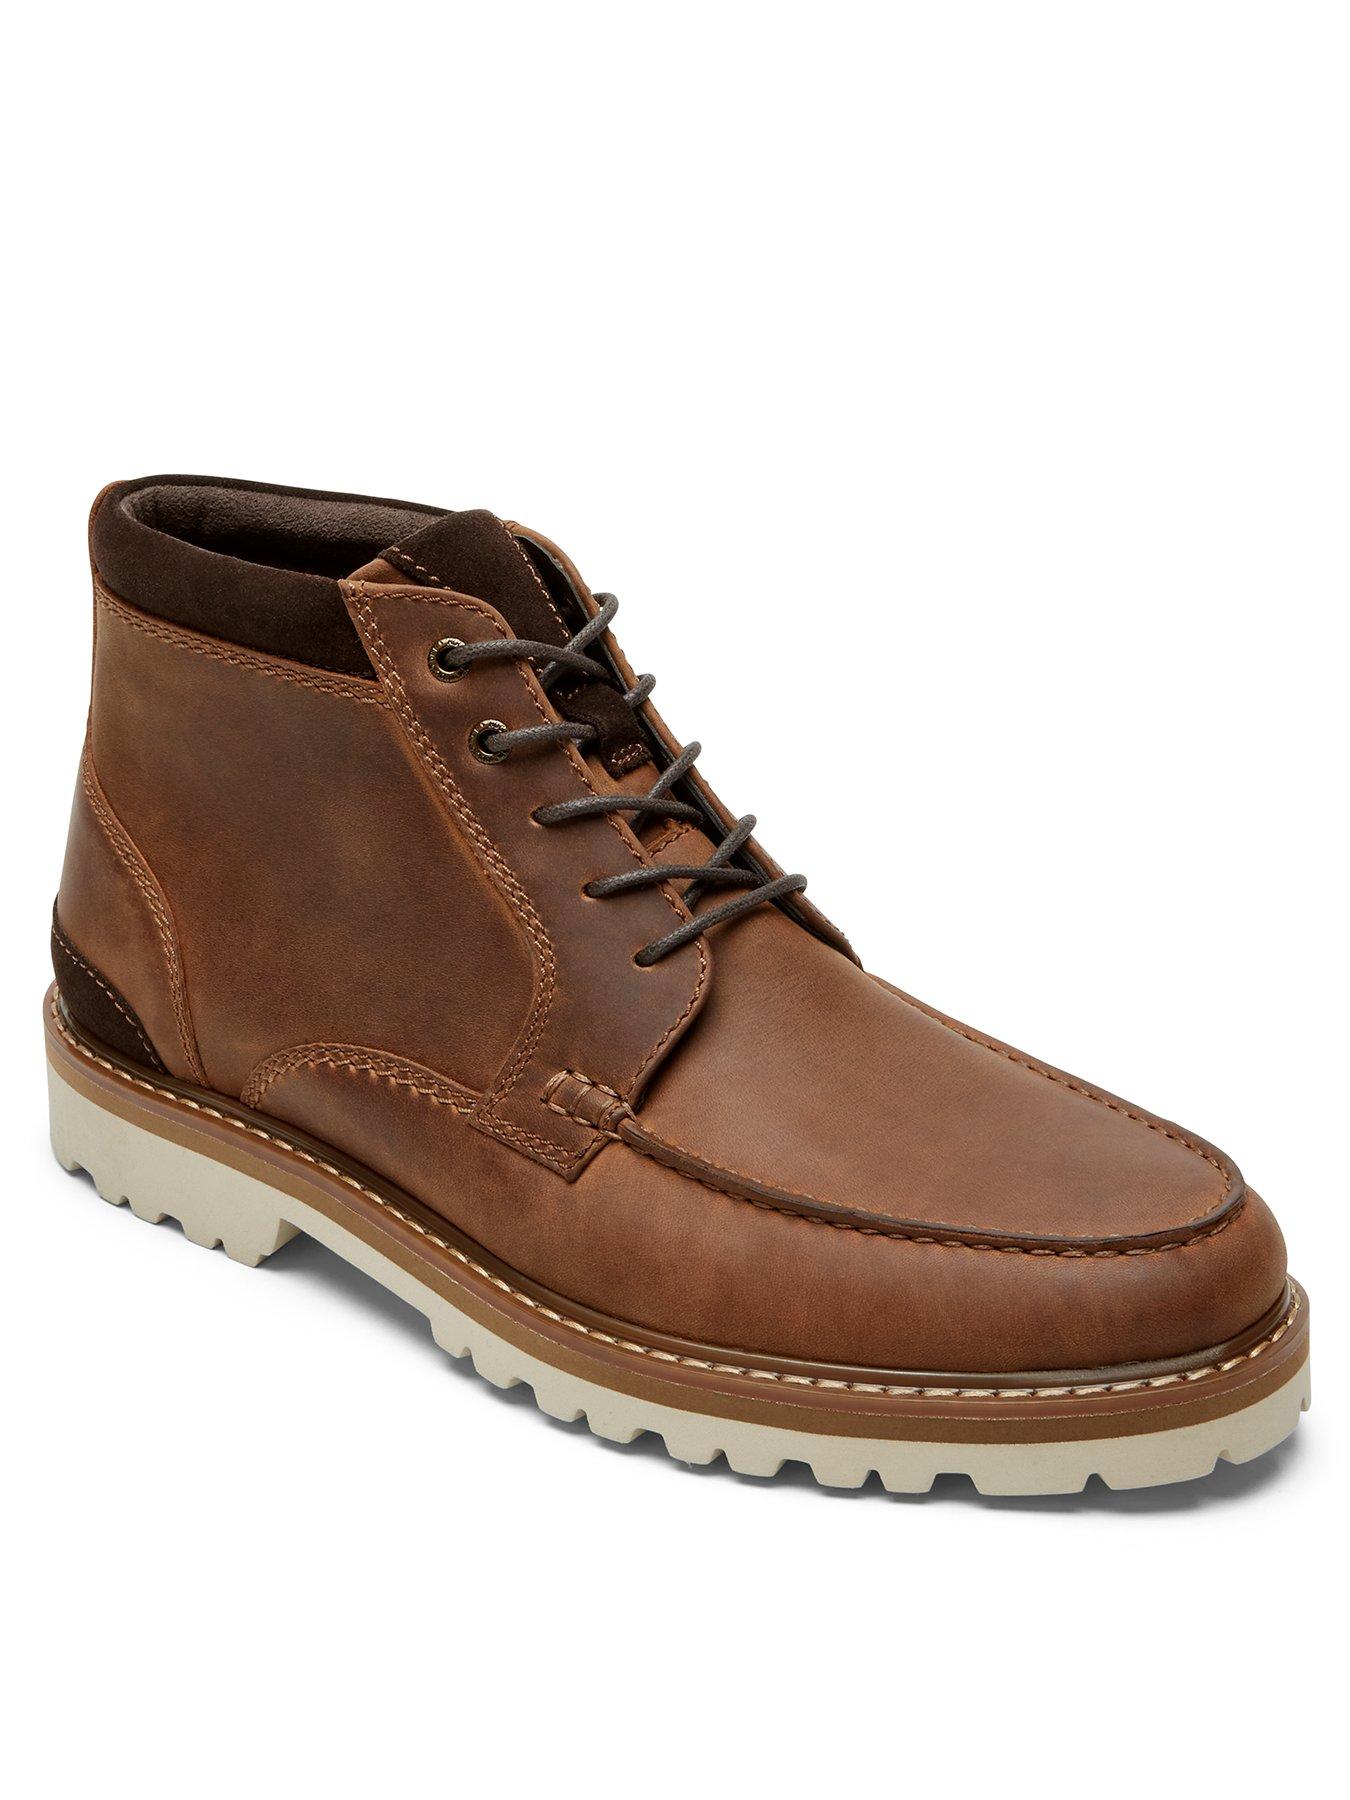 Men XCS Business Waterproof Boots - Brown